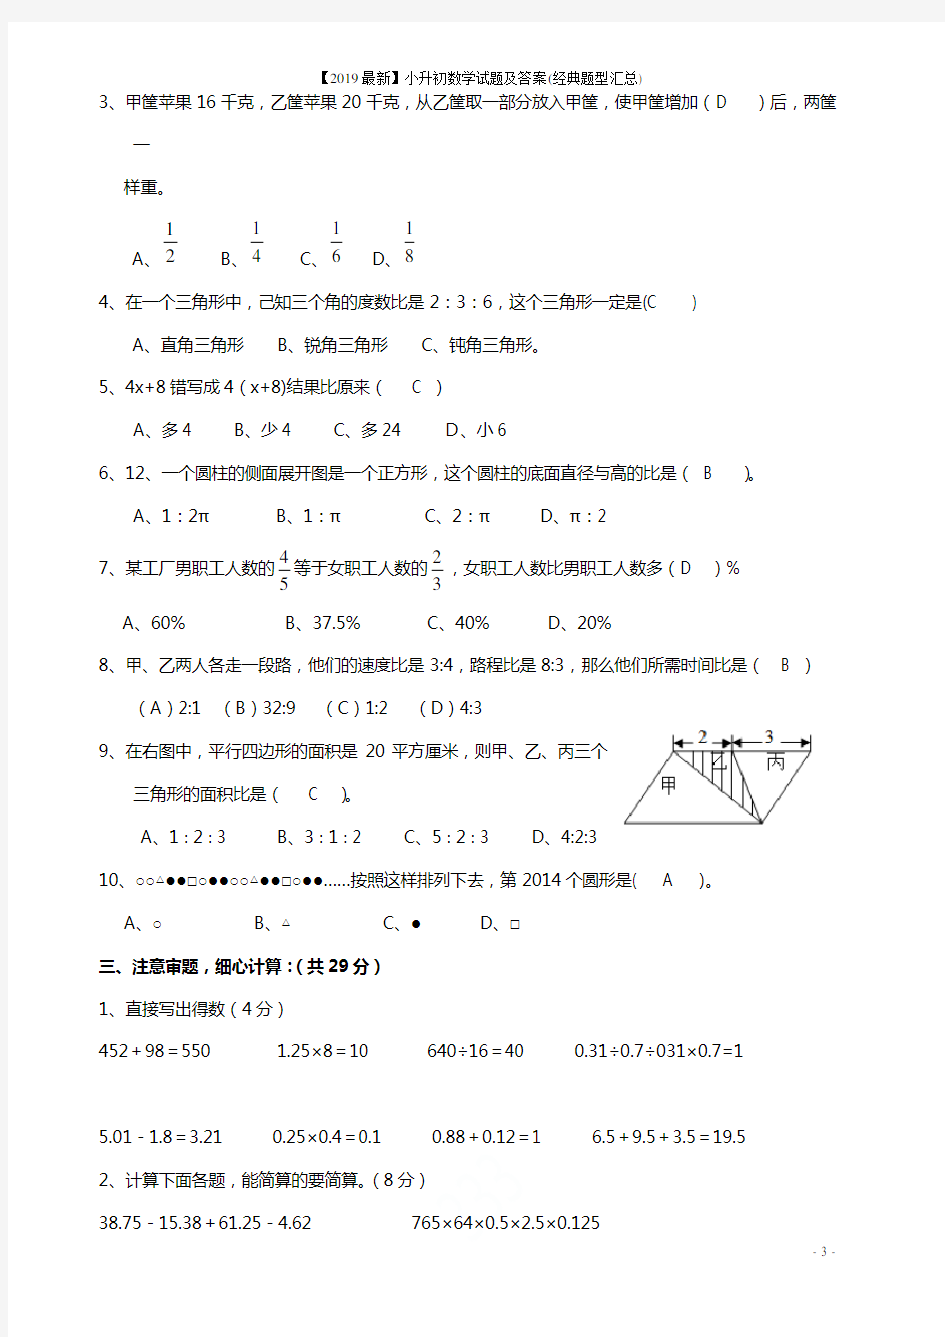 【2019最新】小升初数学试题及答案(经典题型汇总)